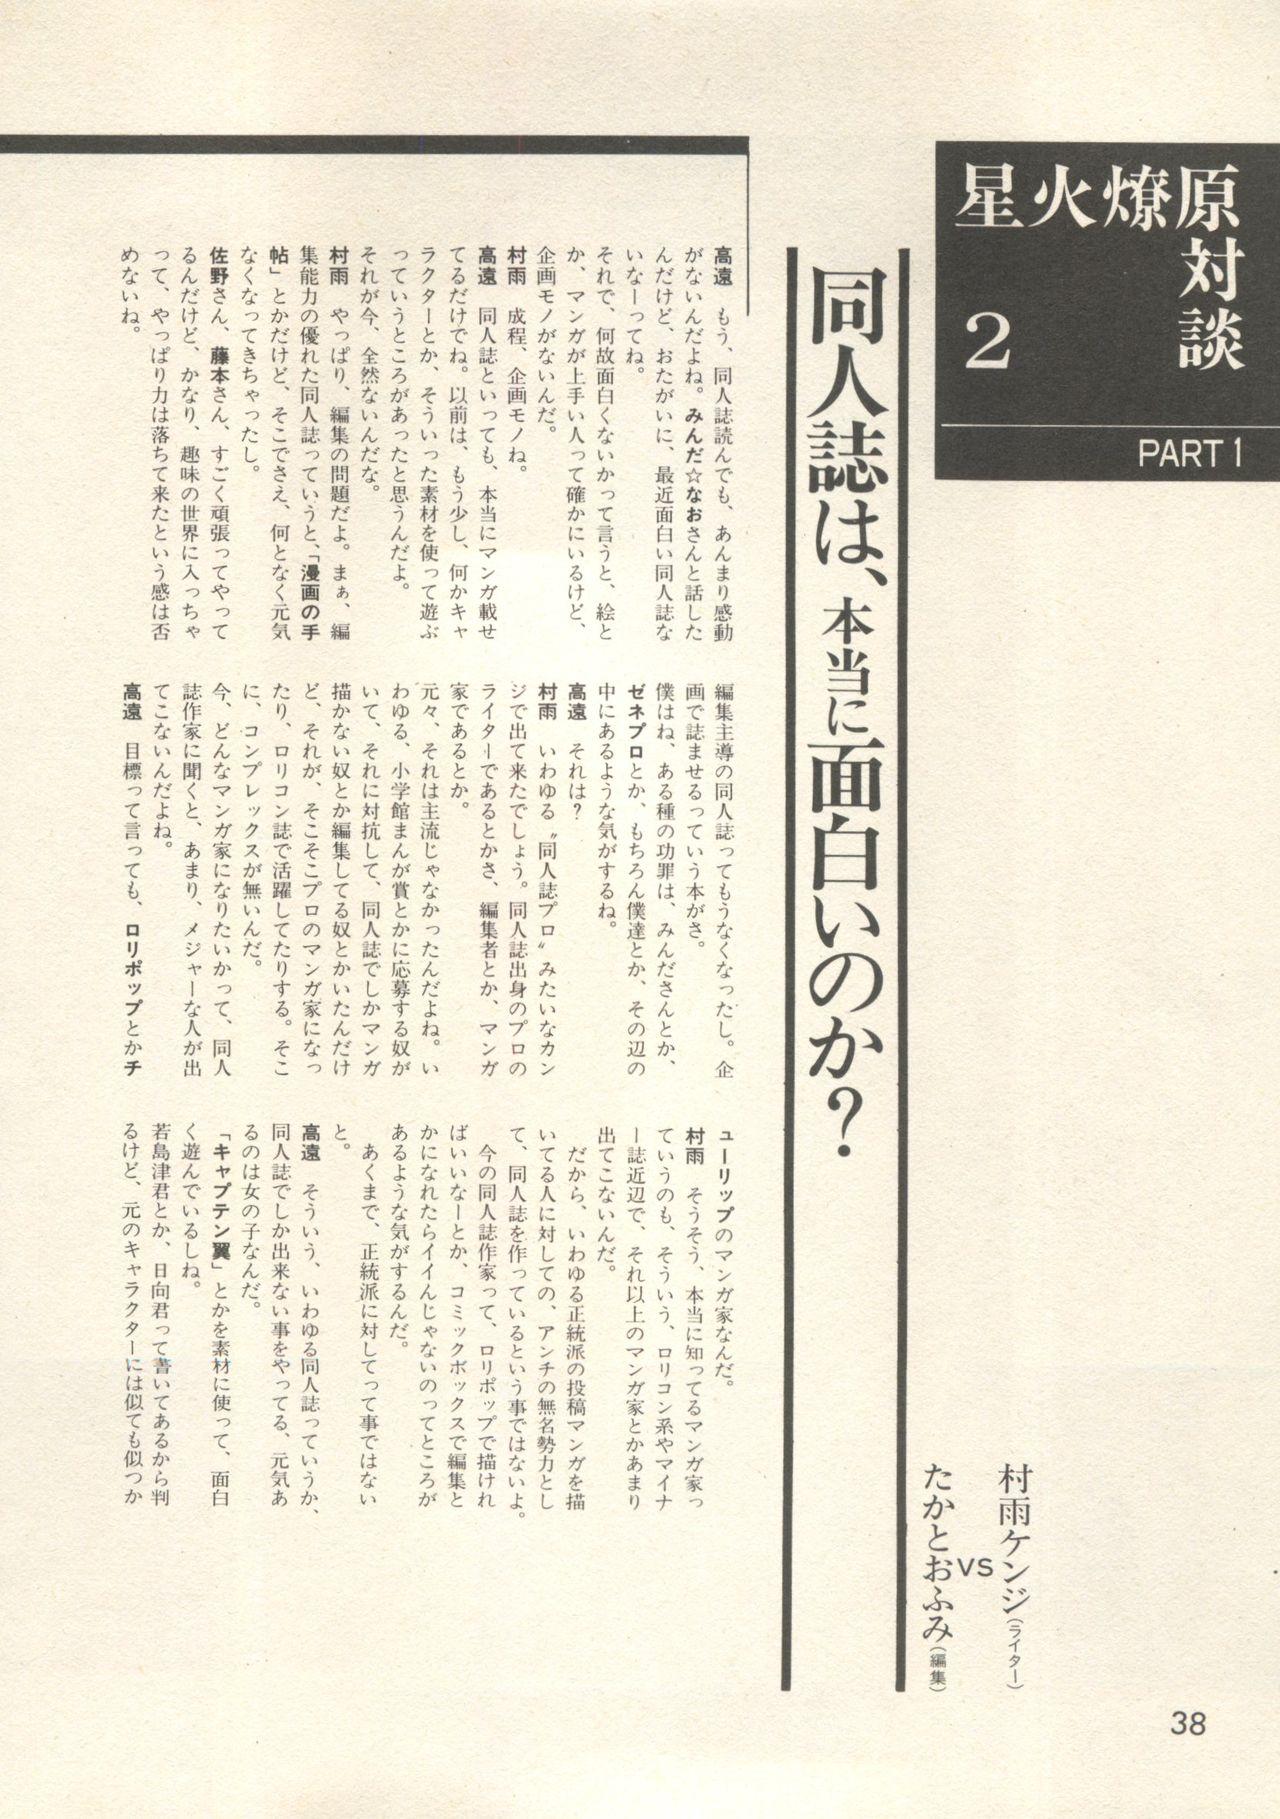 Bishoujo Shoukougun - Lolita Syndrome 7 40